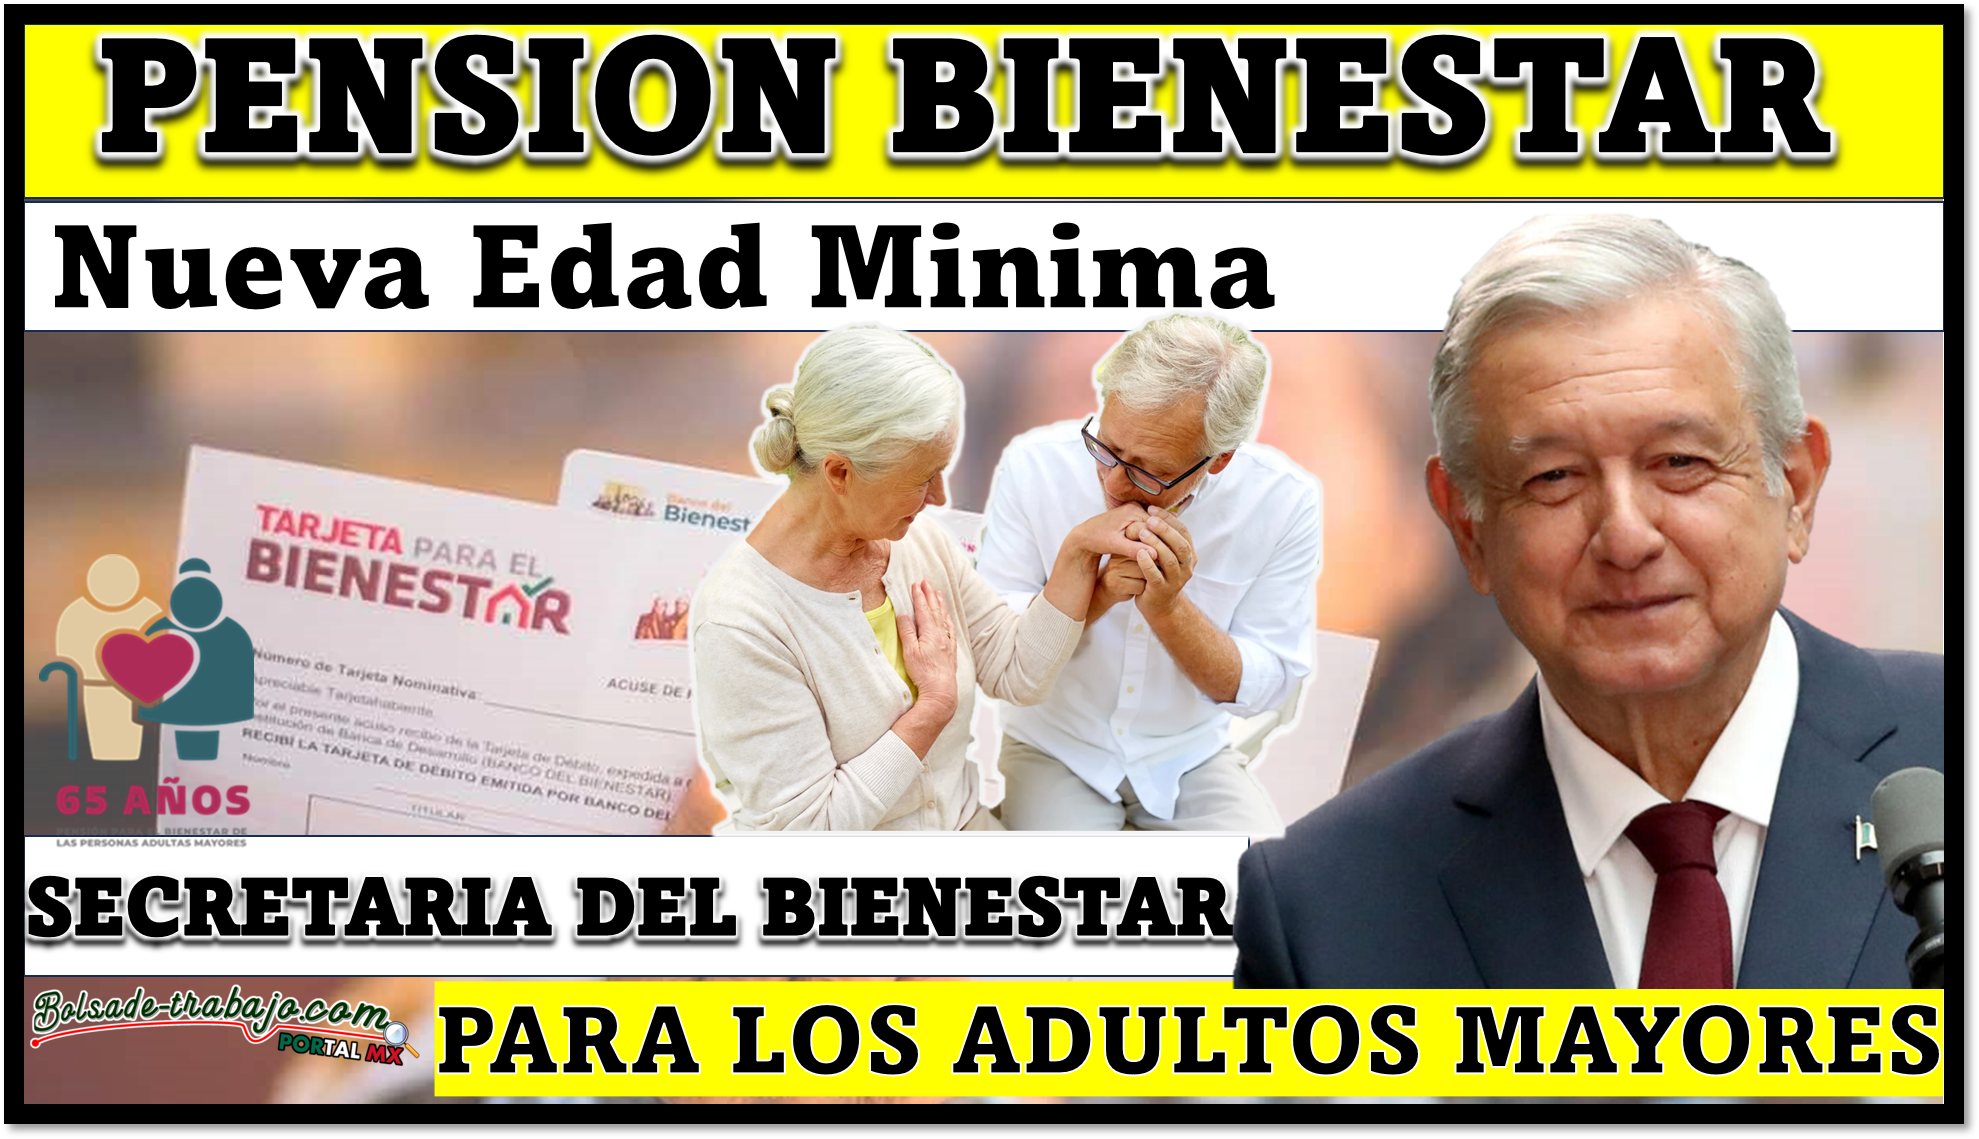 Habra nueva EDAD MINIMA para recibir el apoyo de la Secretaria del Bienestar, los adultos mayores esperan su pensión